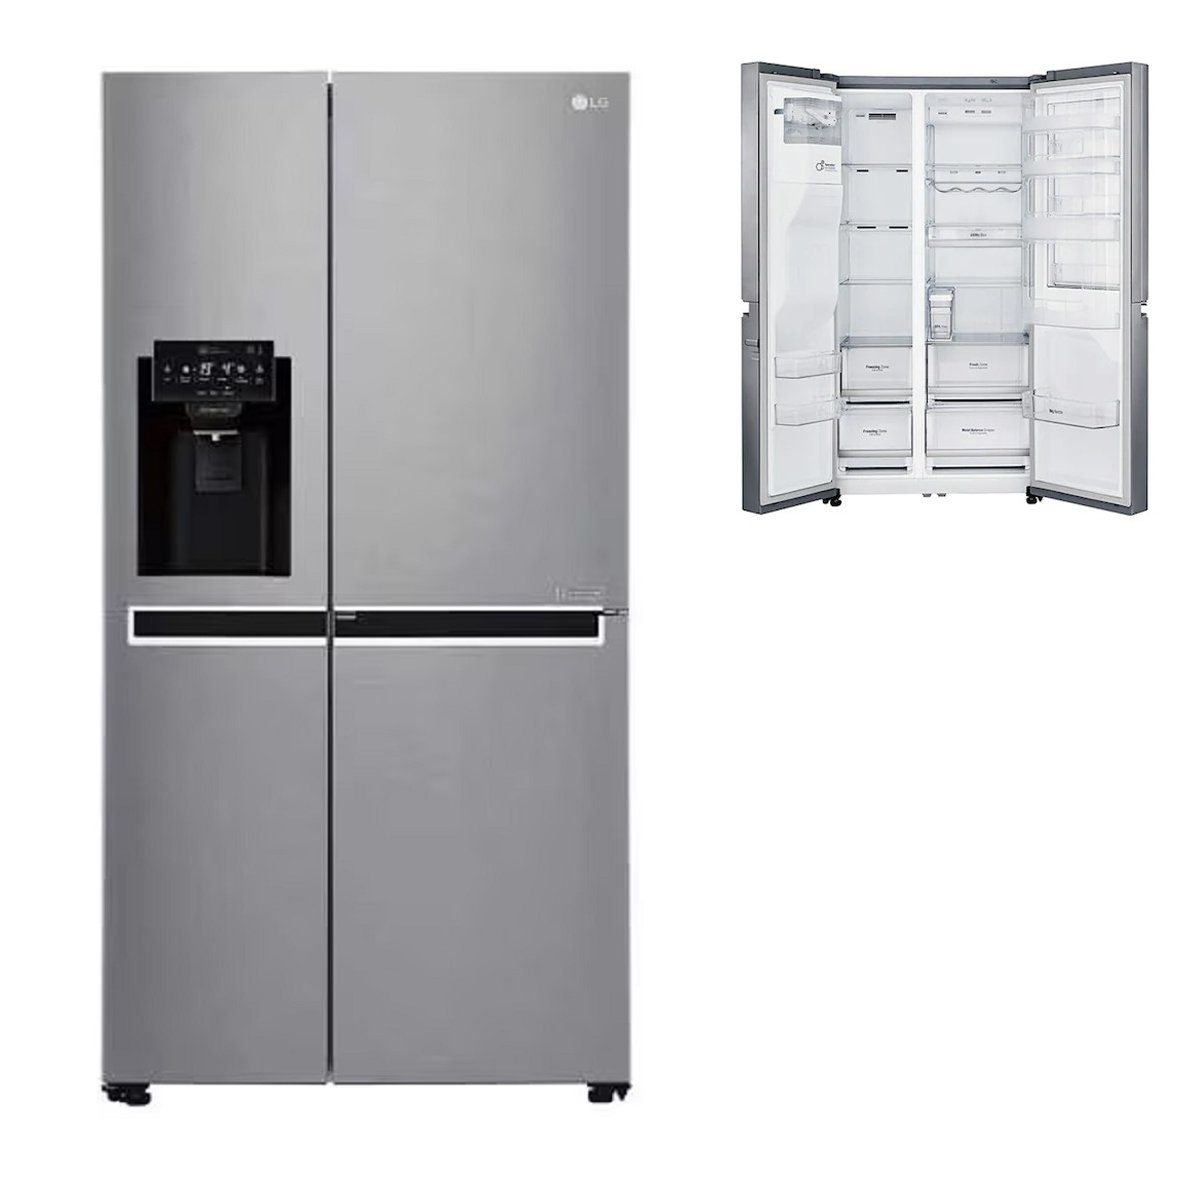 LG Kühlschrank GSJ761PZTZ GSJ761PZTZ, 179 cm hoch, 91.2 cm breit, Multiairflow Umluftkühlung, Inverter Linear Kompressor™